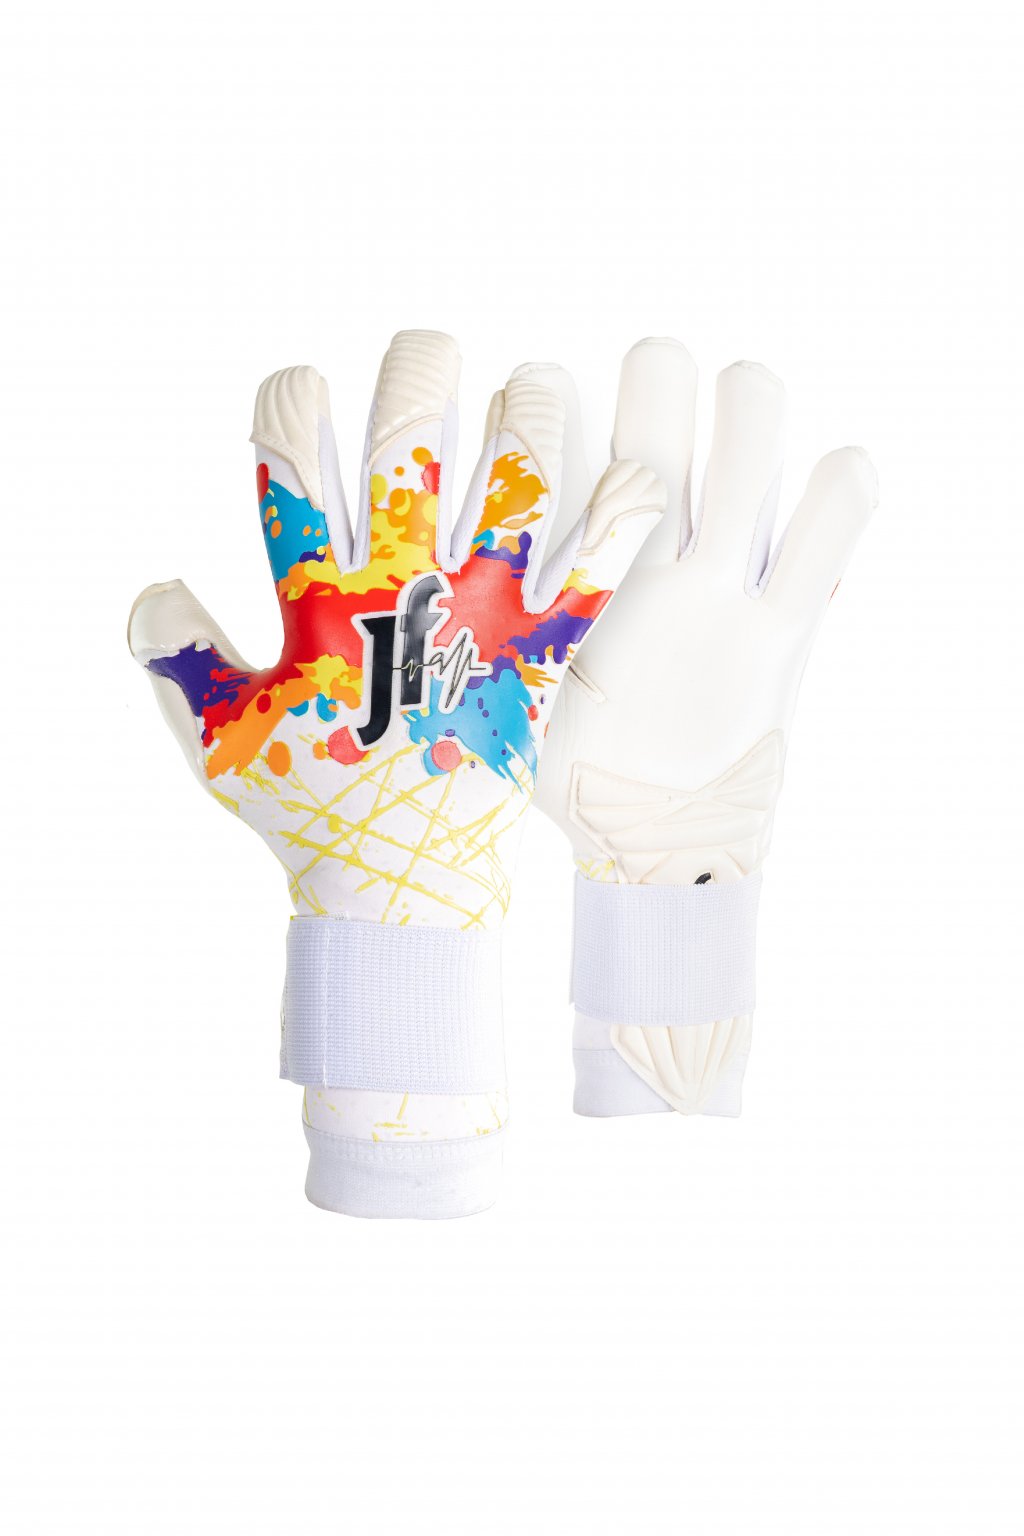 Brankářské rukavice Jfam Splash 23 bílé barevné